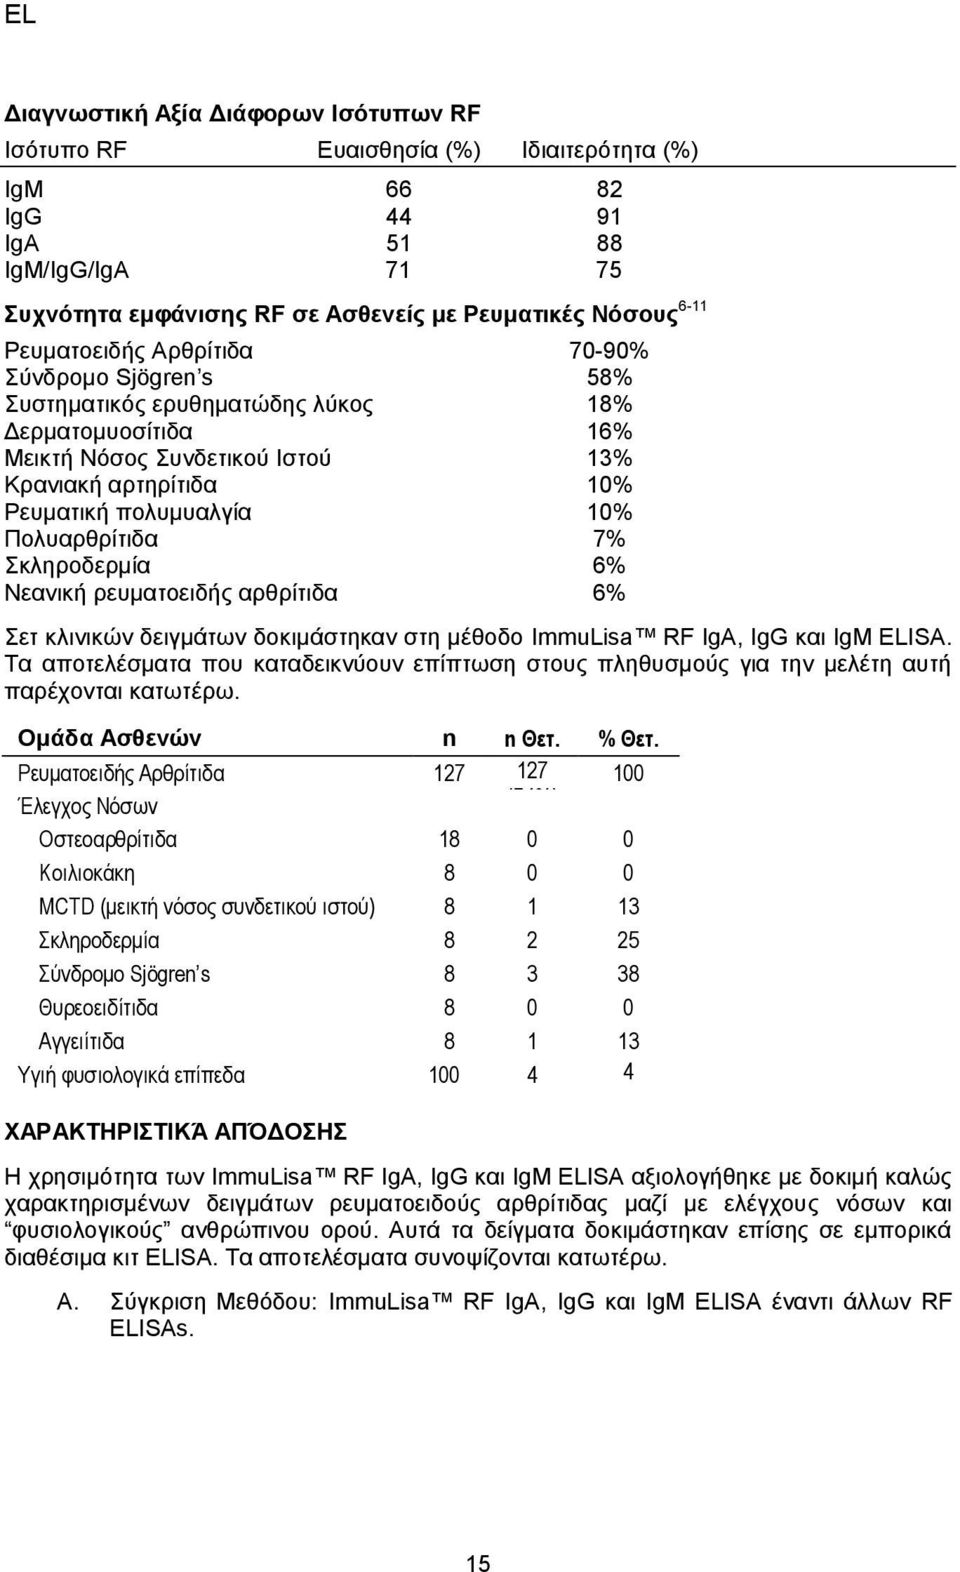 Πολυαρθρίτιδα 7% Σκληροδερμία 6% Νεανική ρευματοειδής αρθρίτιδα 6% Σετ κλινικών δειγμάτων δοκιμάστηκαν στη μέθοδο ImmuLisa RF IgA, IgG και IgM ELISA.